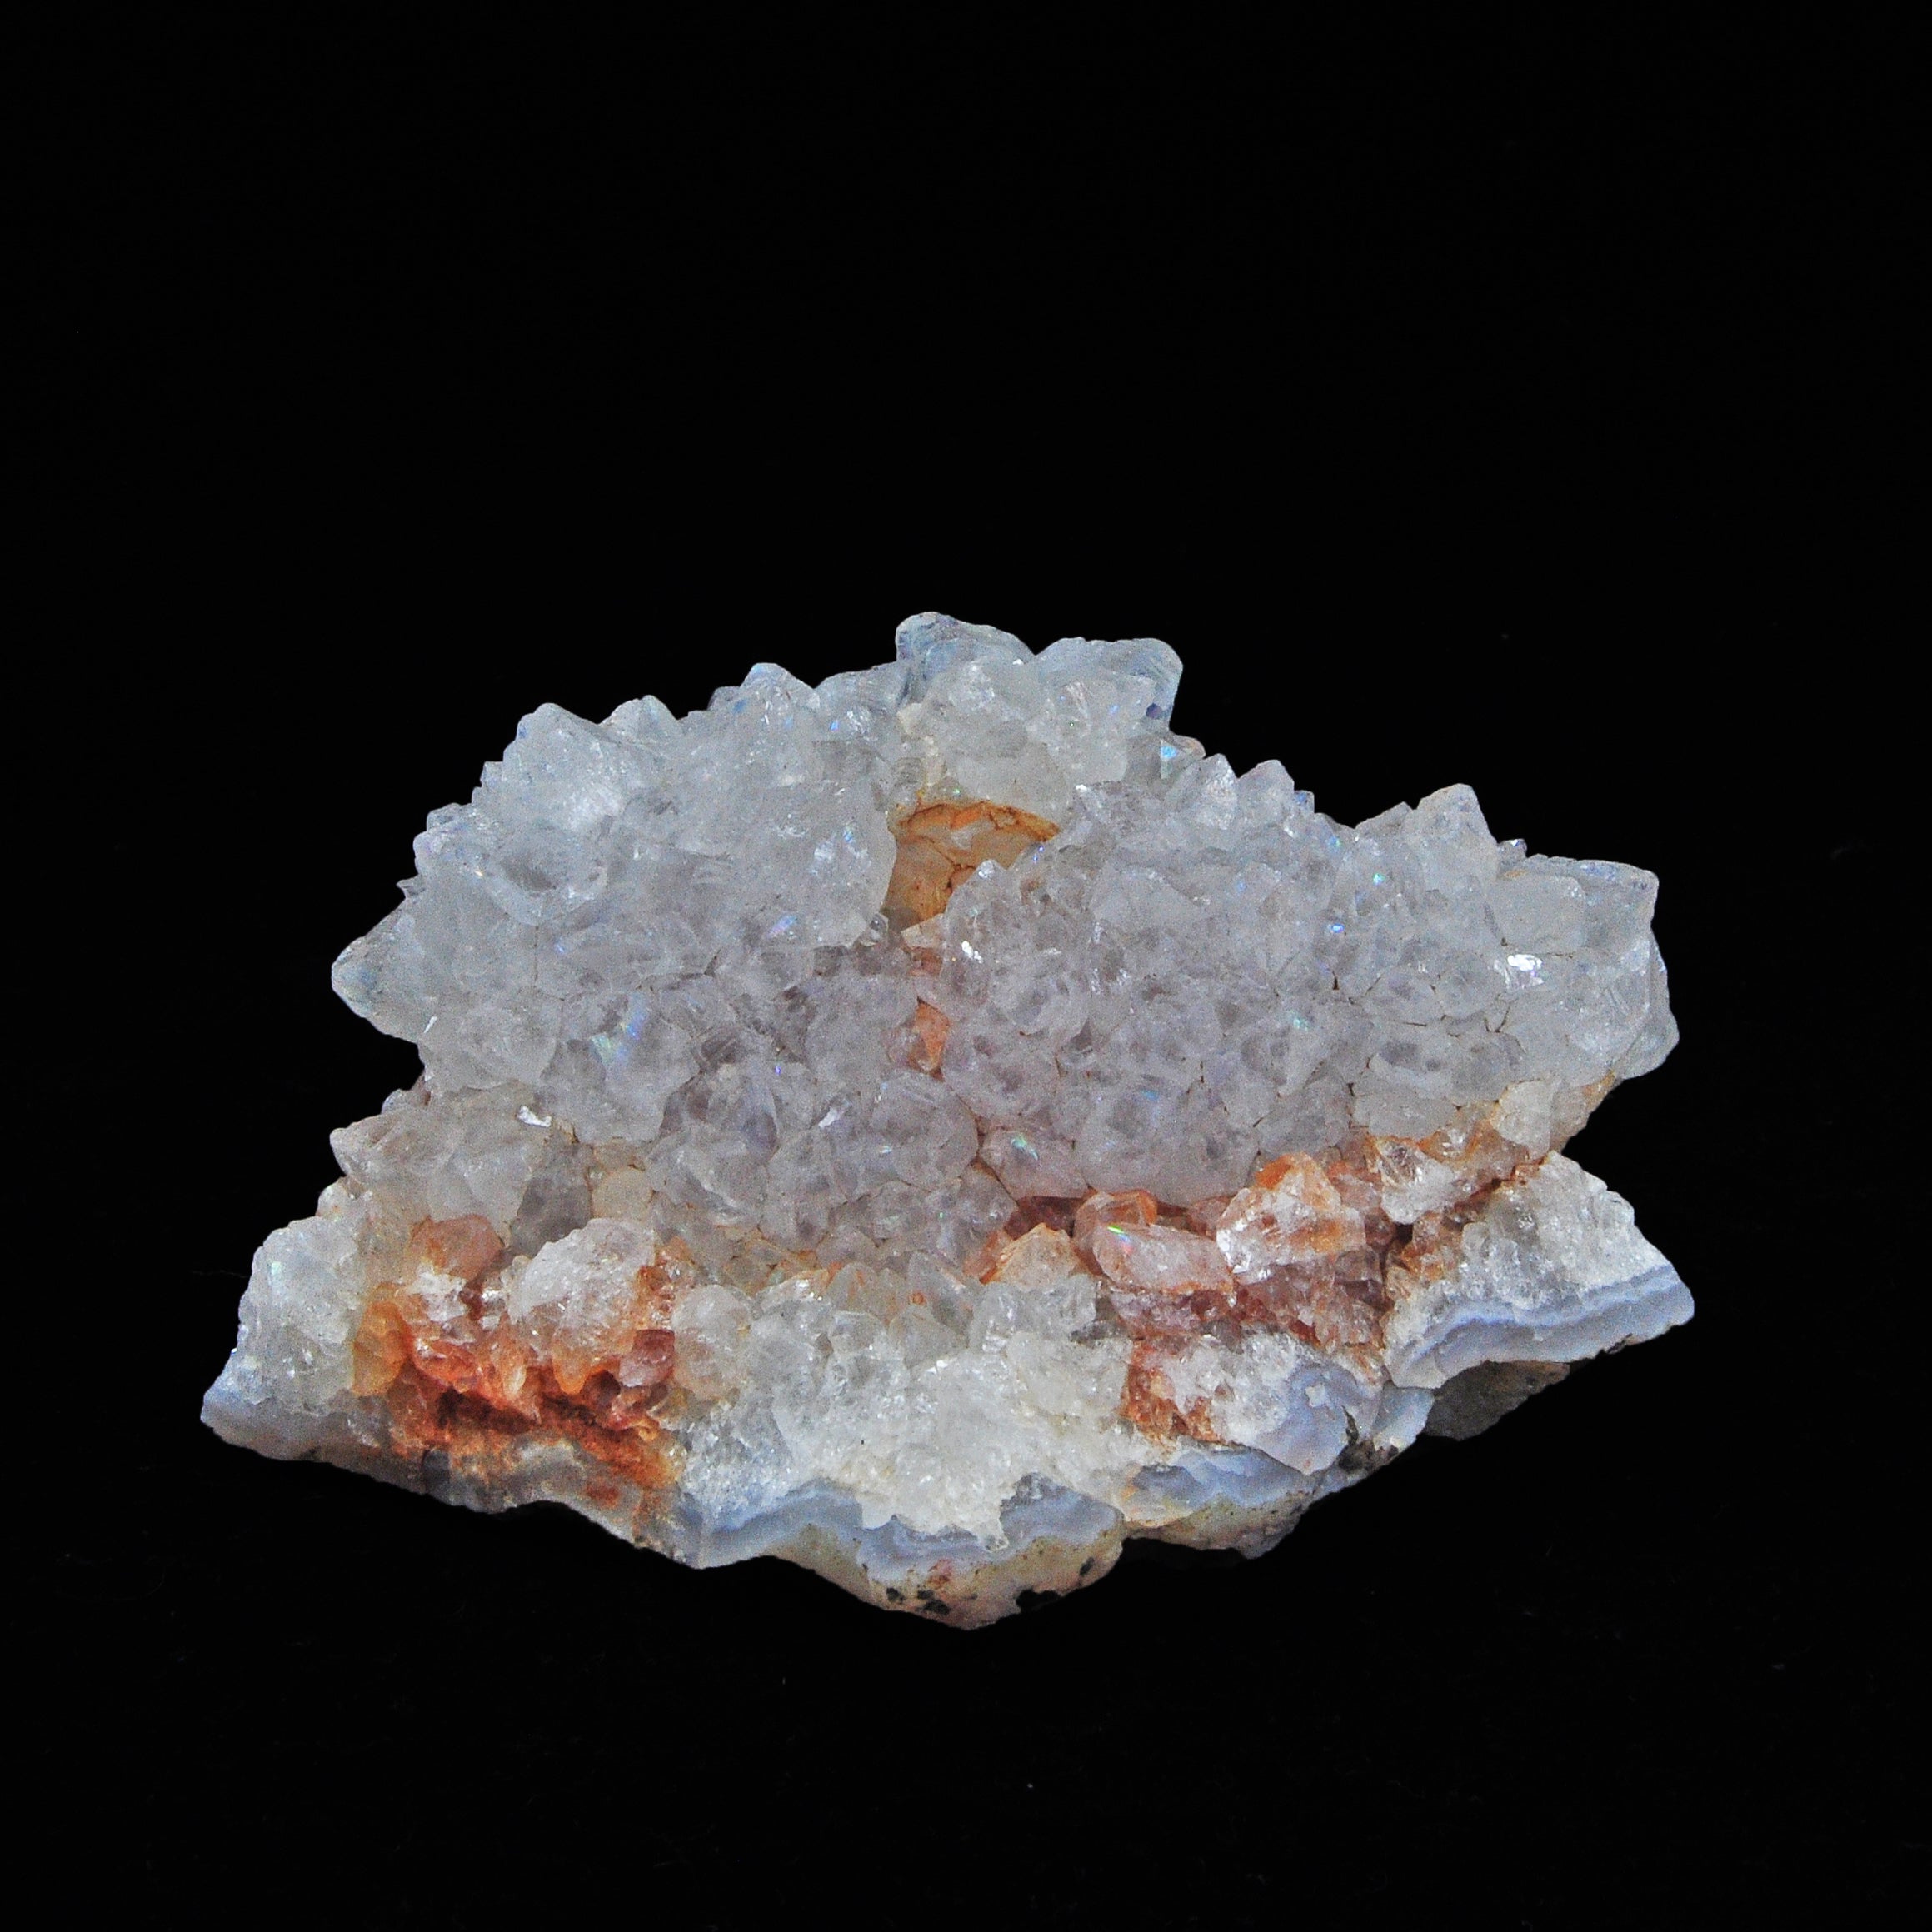 Quartz - Natural Iridescent Anandalite Quartz Stalactite Crystal - India - YX-256 - Crystalarium